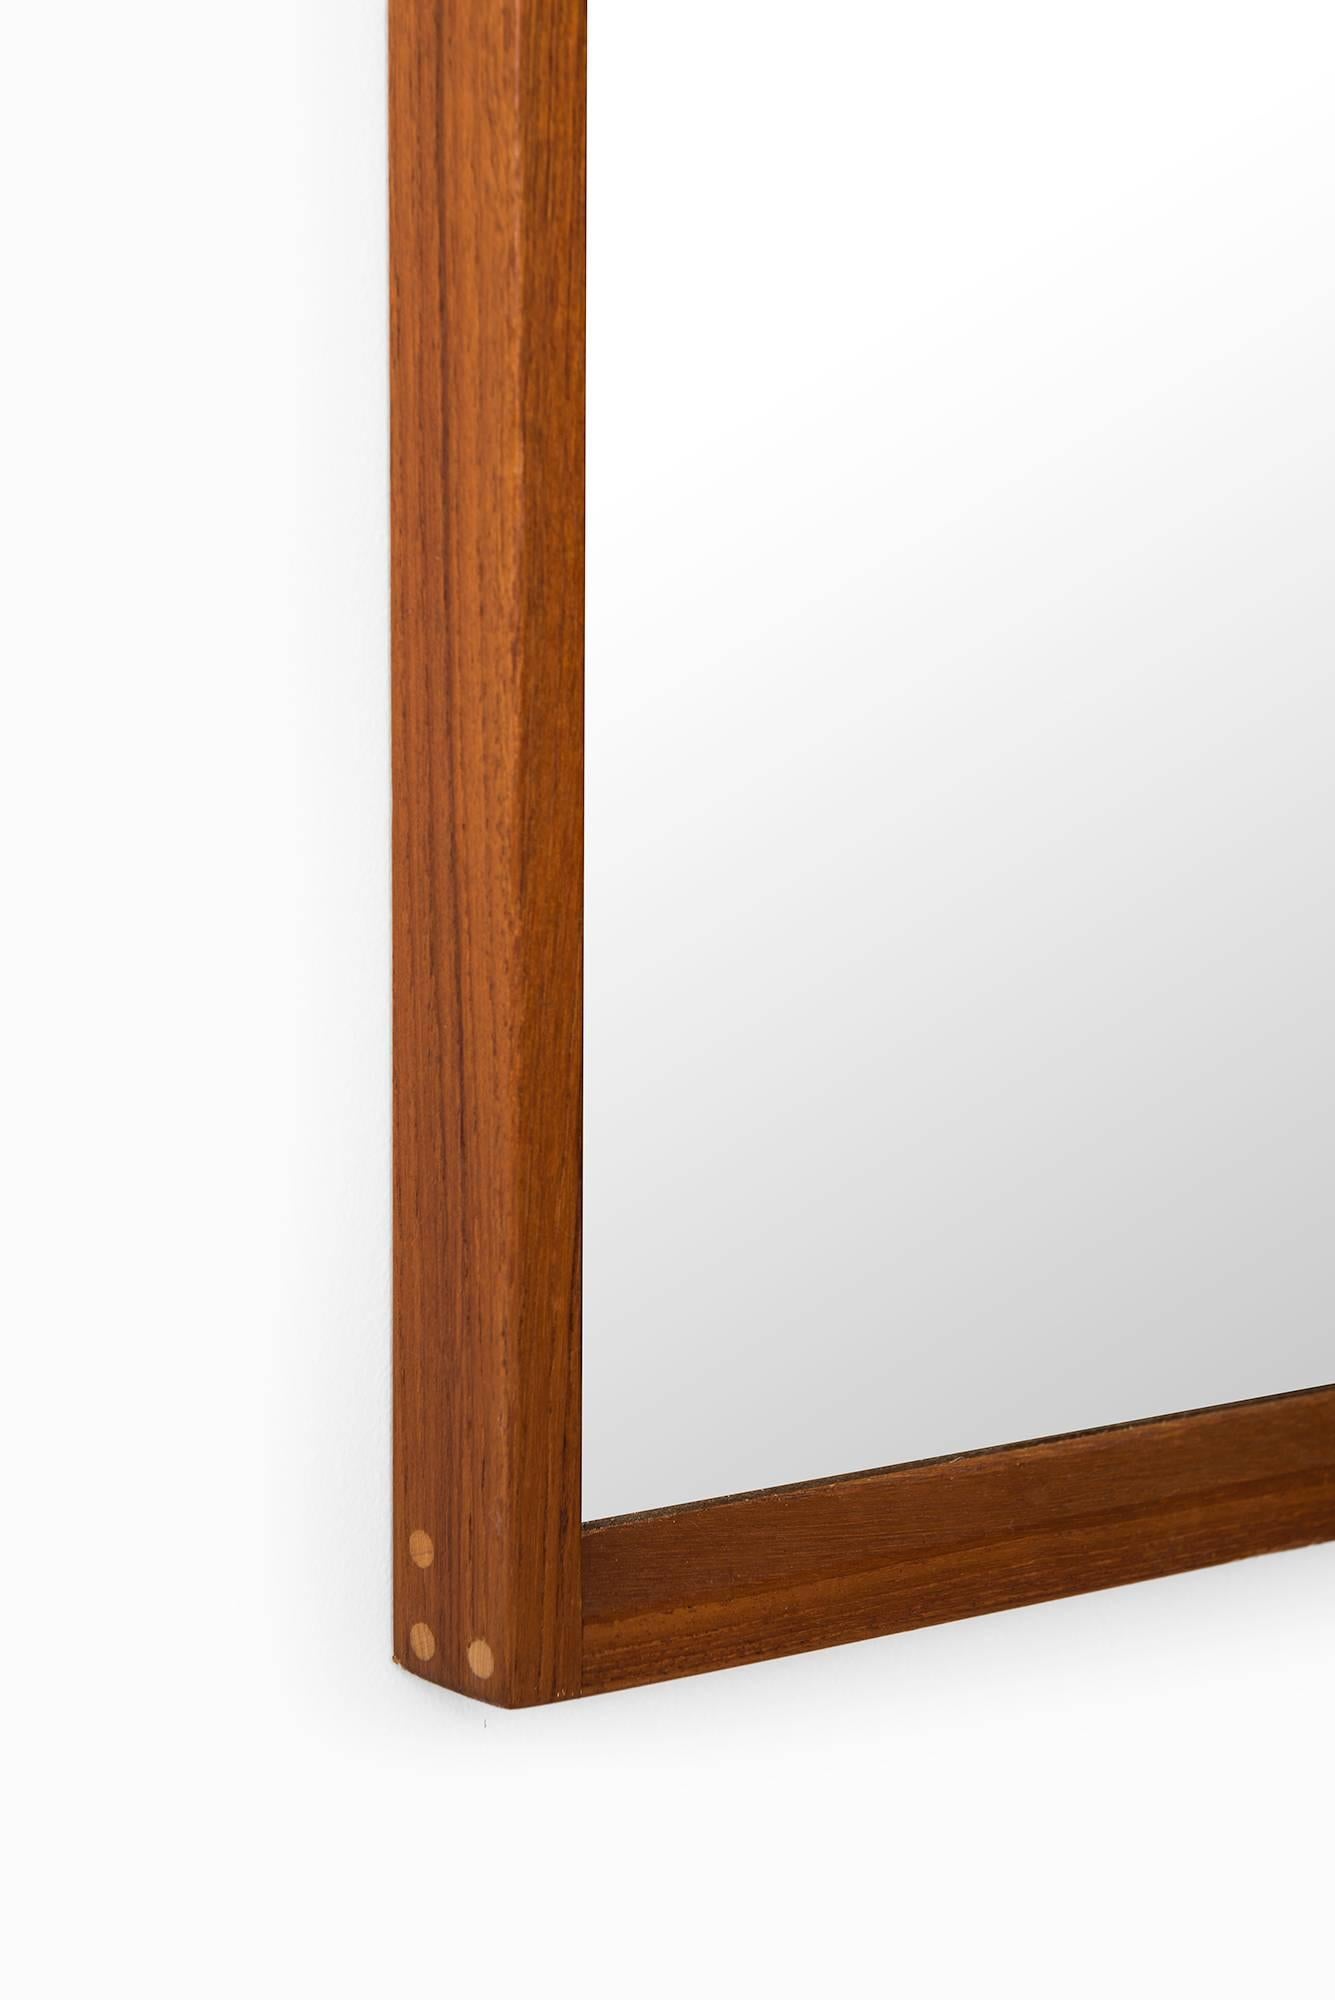 Mirror in teak designed by Aksel Kjersgaard. Produced by Odder in Denmark.